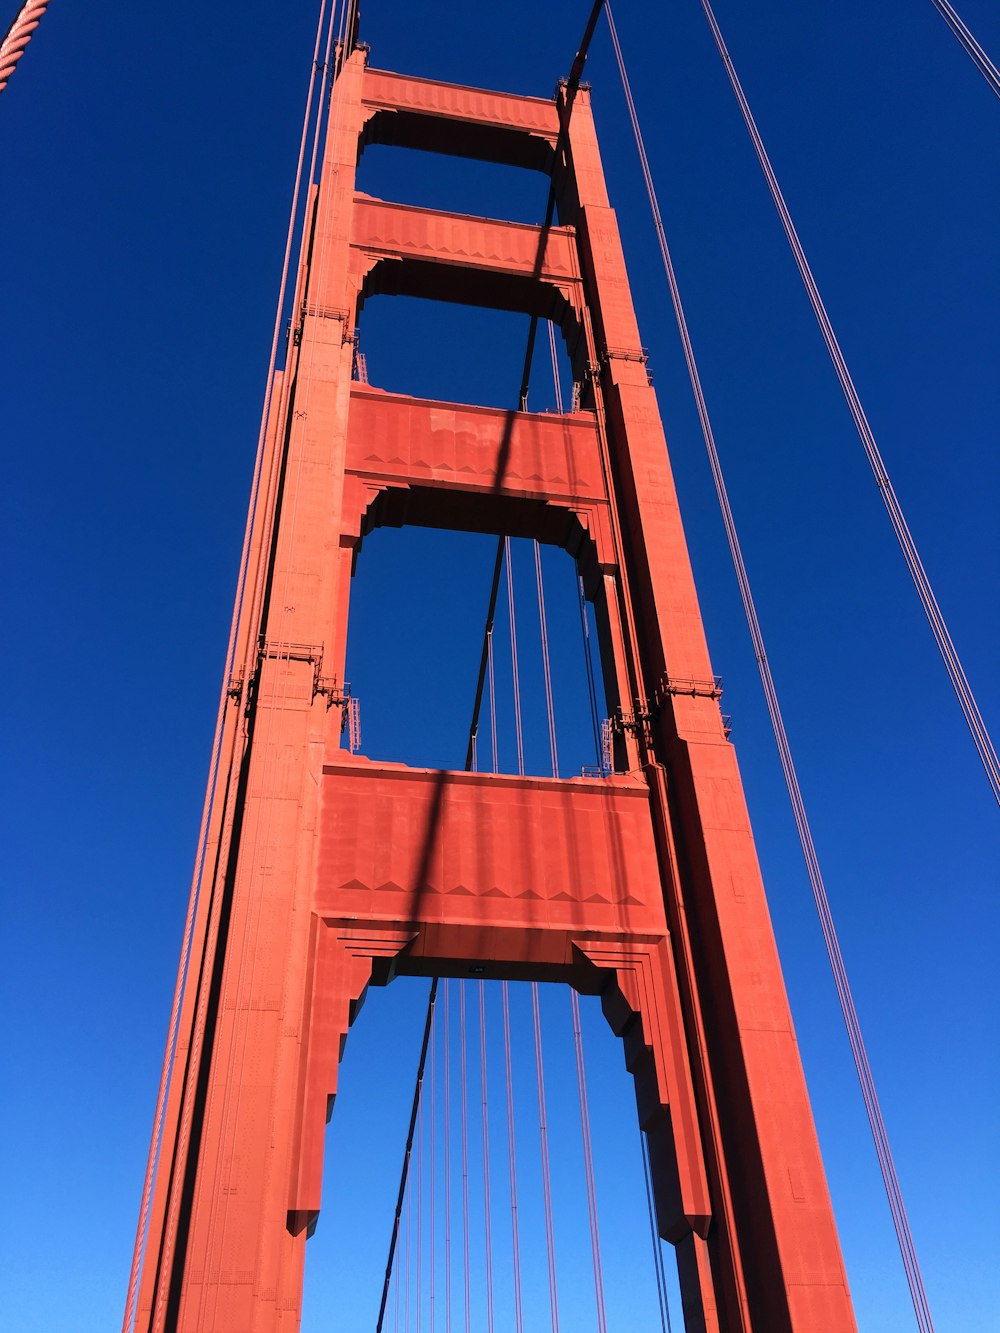 Una vista del puente Golden Gate desde abajo